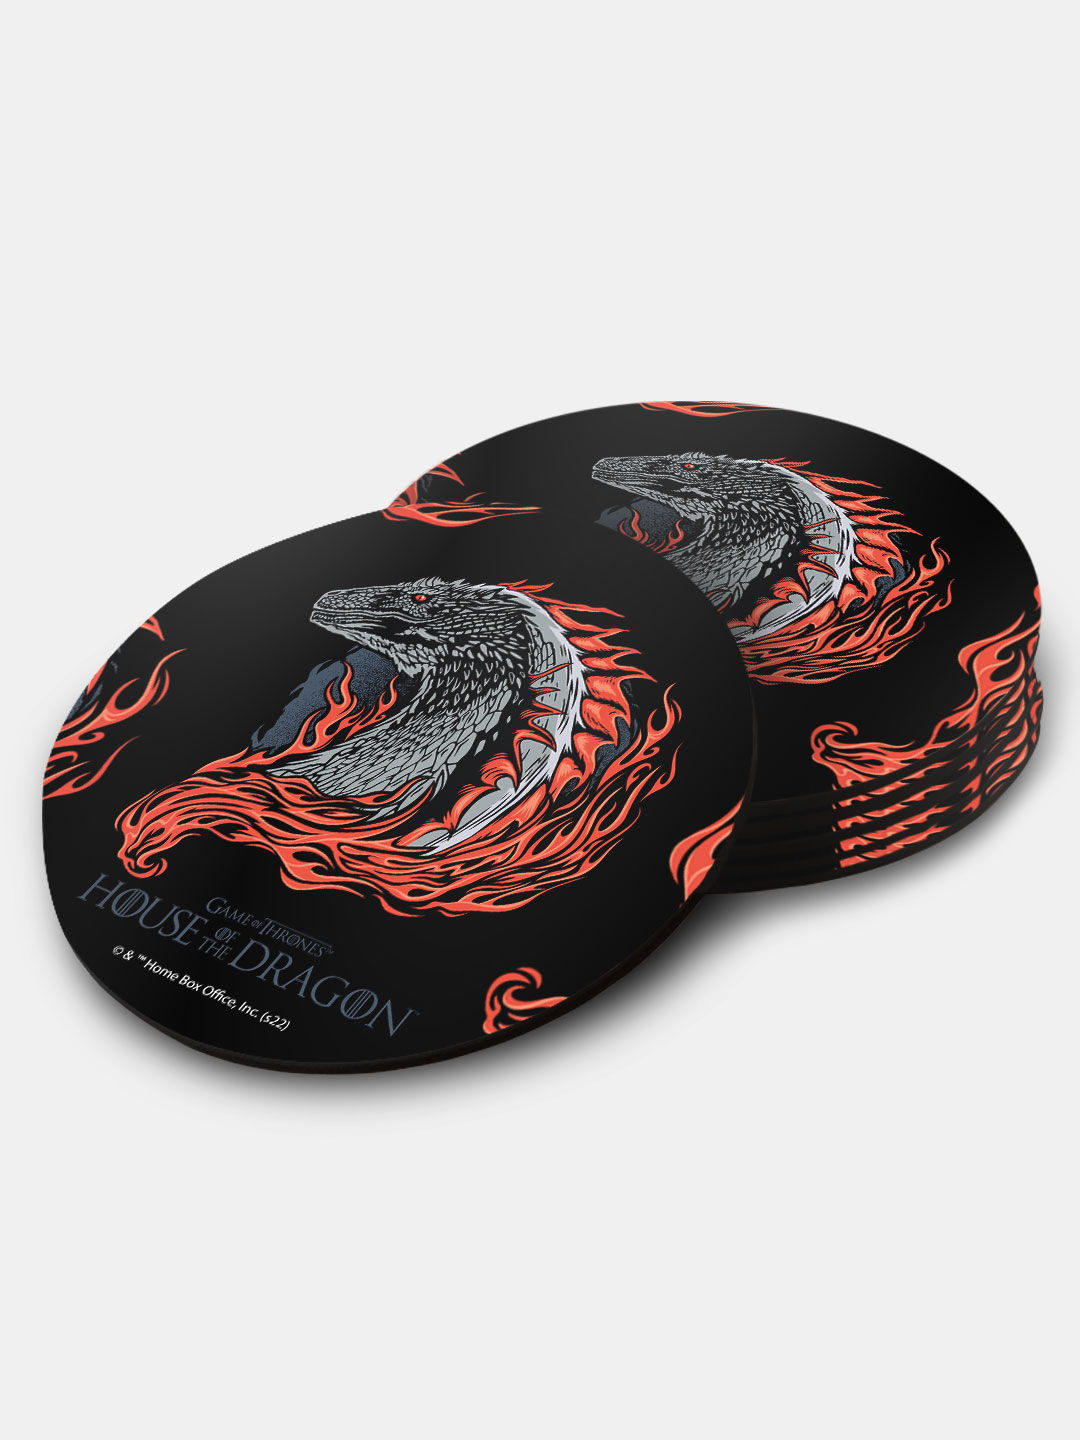 Buy HOD Dragon Profile Black - Circular Coasters Coasters Online